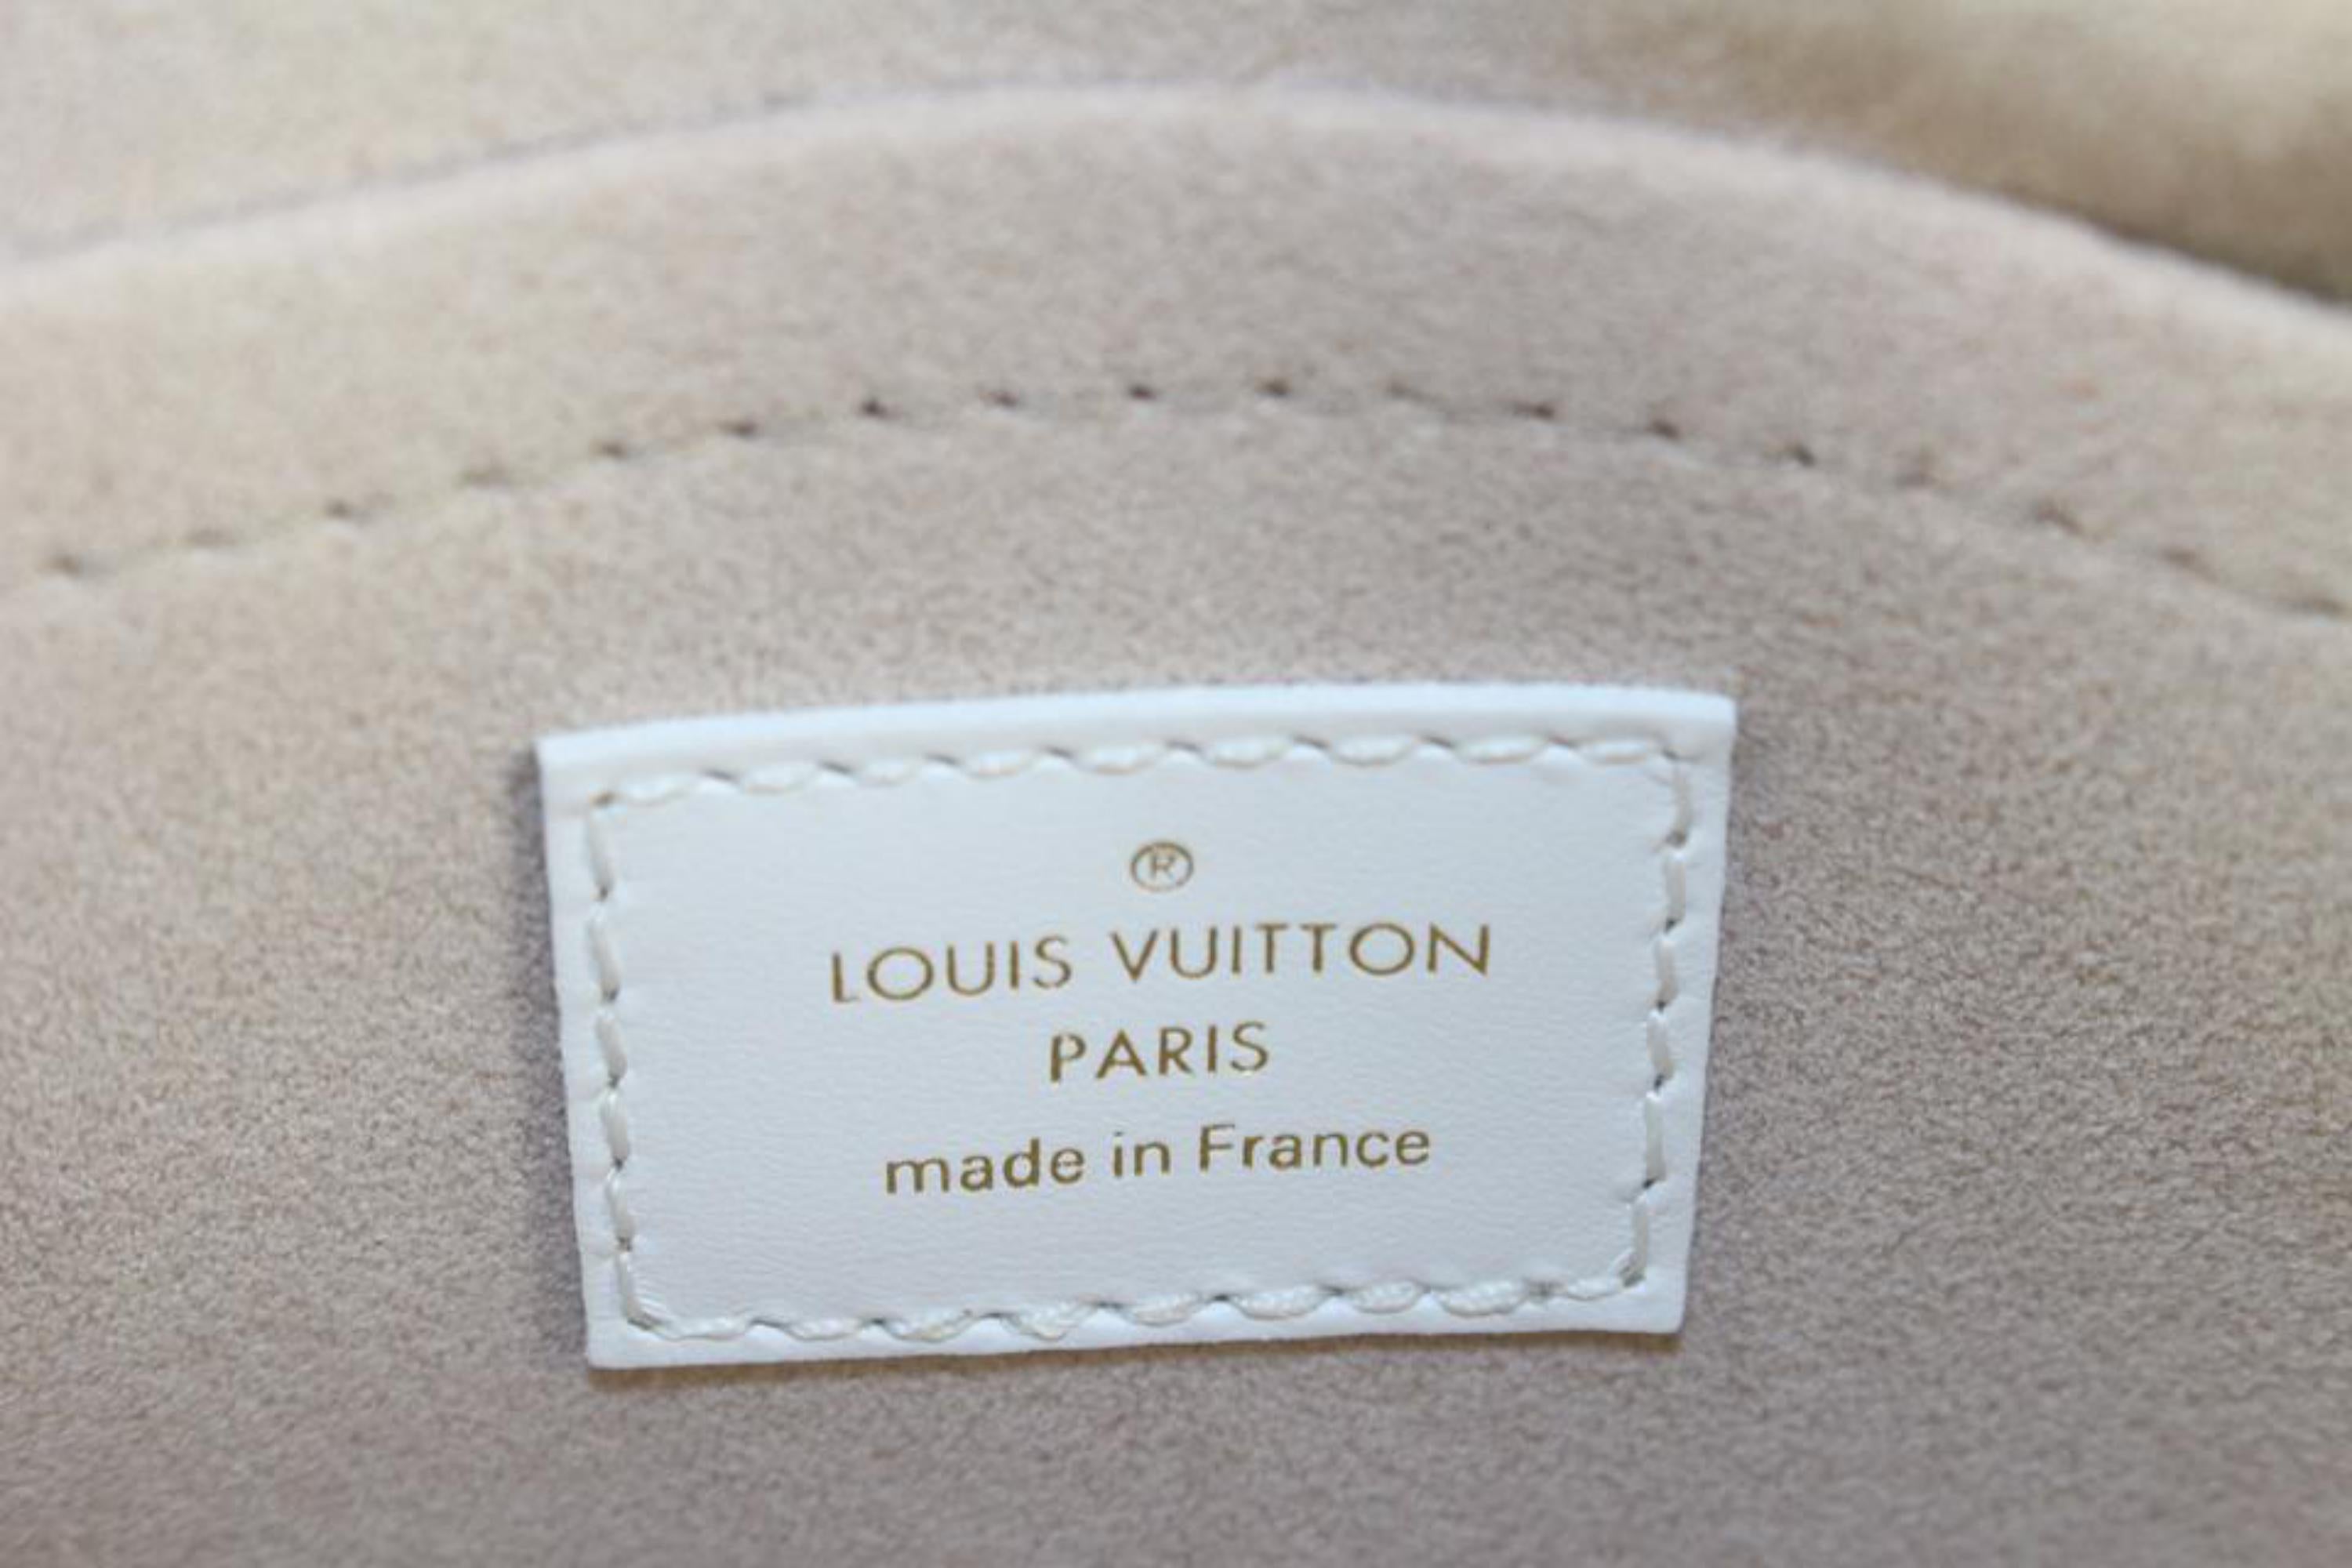 Louis Vuitton Speedy Bandouliere Bag LV Match Monogram Jacquard Velvet 20  Blue 2222561